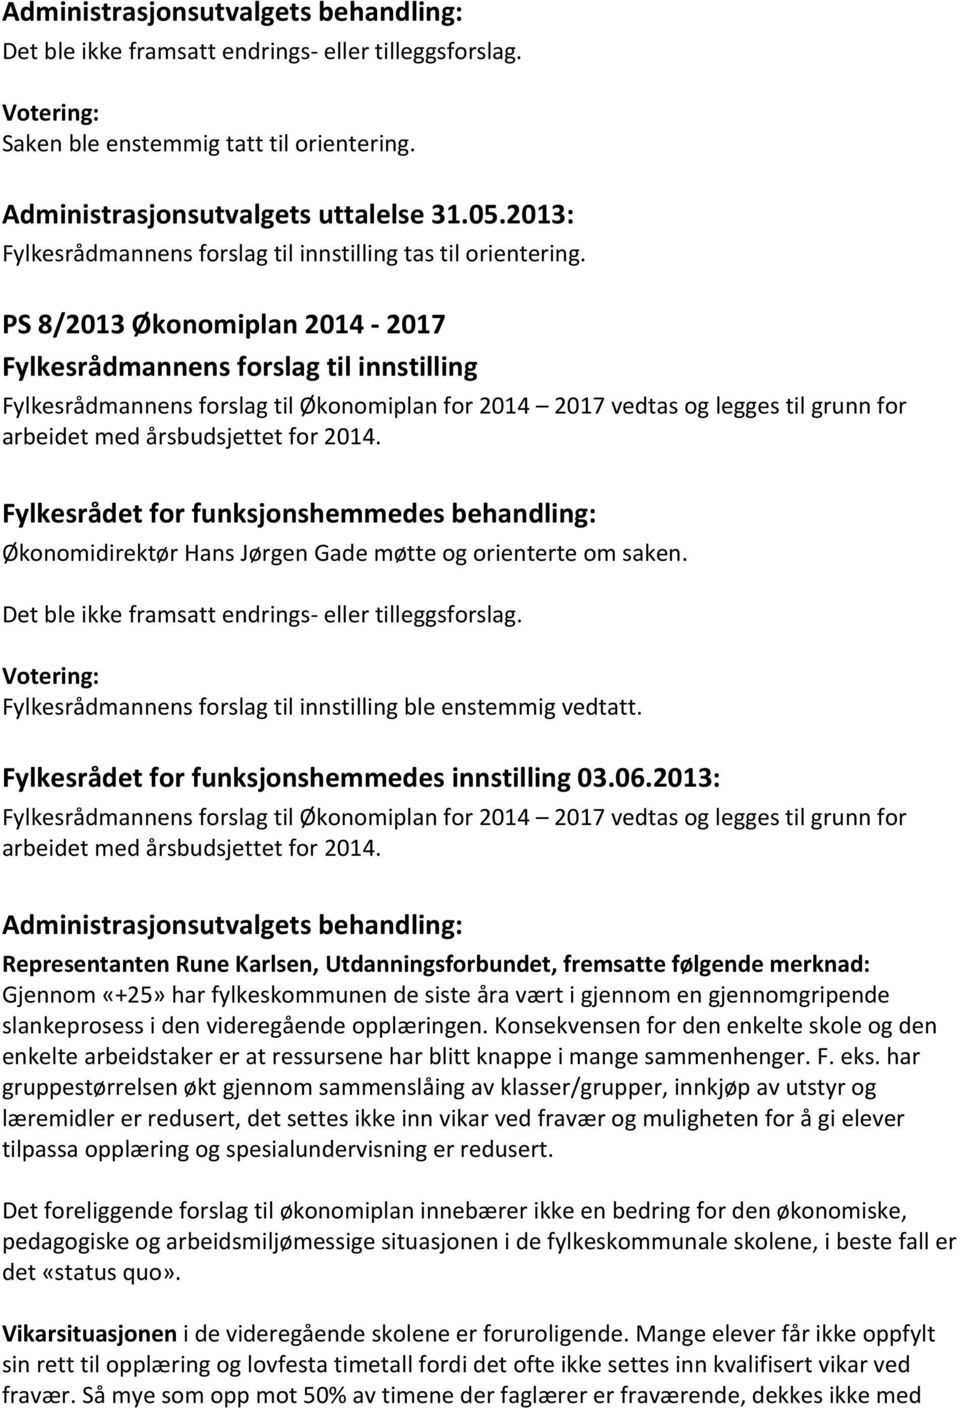 PS 8/2013 Økonomiplan 2014-2017 Fylkesrådmannens forslag til innstilling Fylkesrådmannens forslag til Økonomiplan for 2014 2017 vedtas og legges til grunn for arbeidet med årsbudsjettet for 2014.